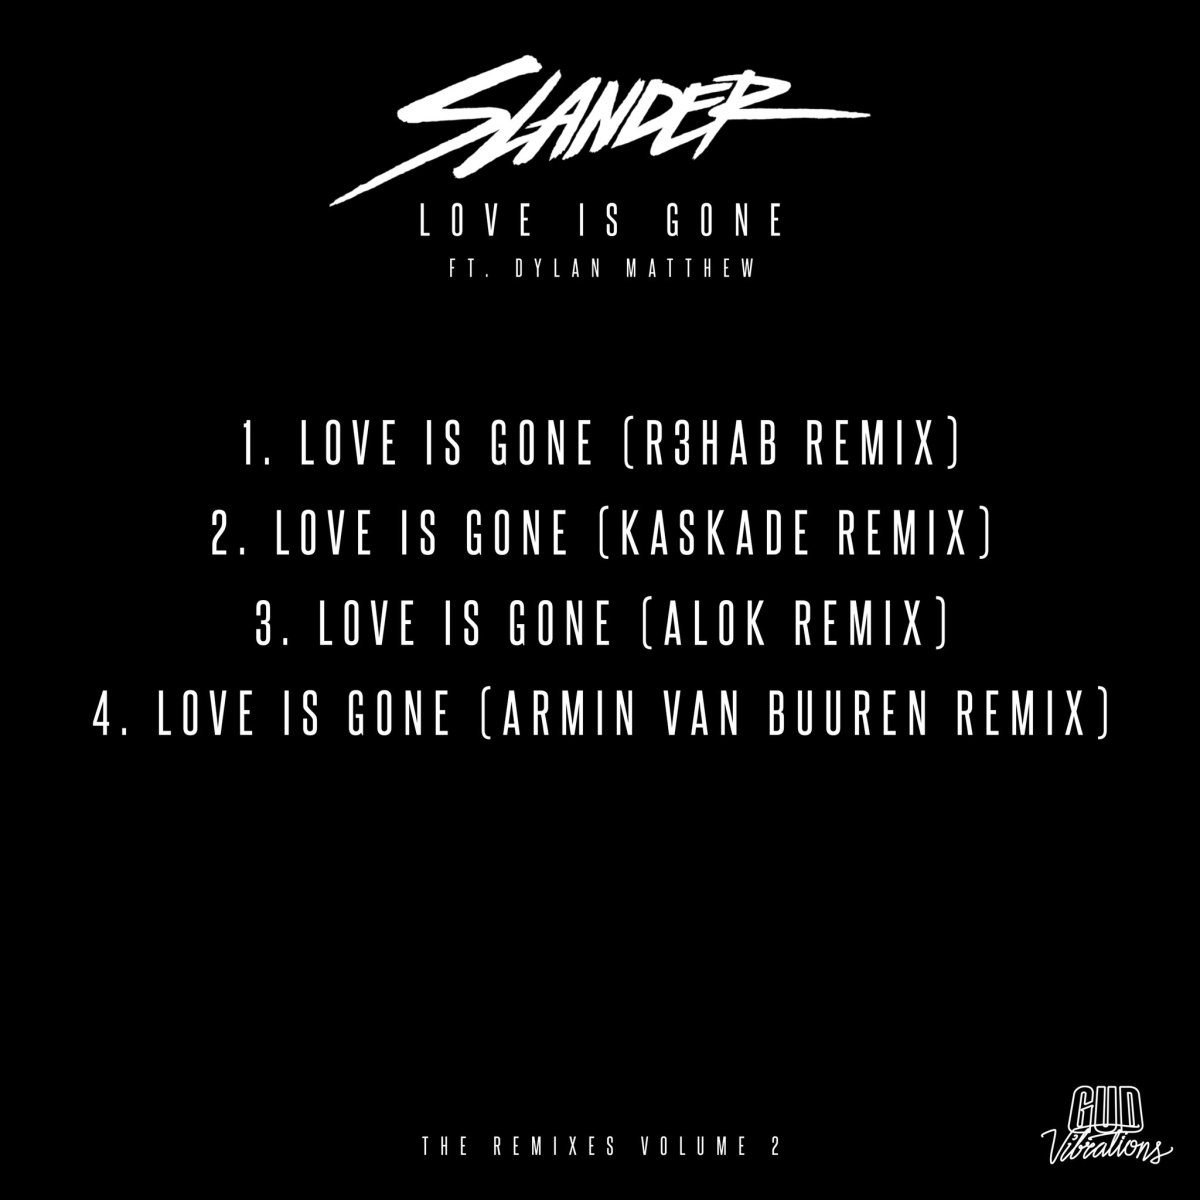 SLANDER and Dylan Matthew's "Love Is Gone Remixes Vol. 2" EP will feature R3hab, Kaskade, Alok, and Armin van Buuren.